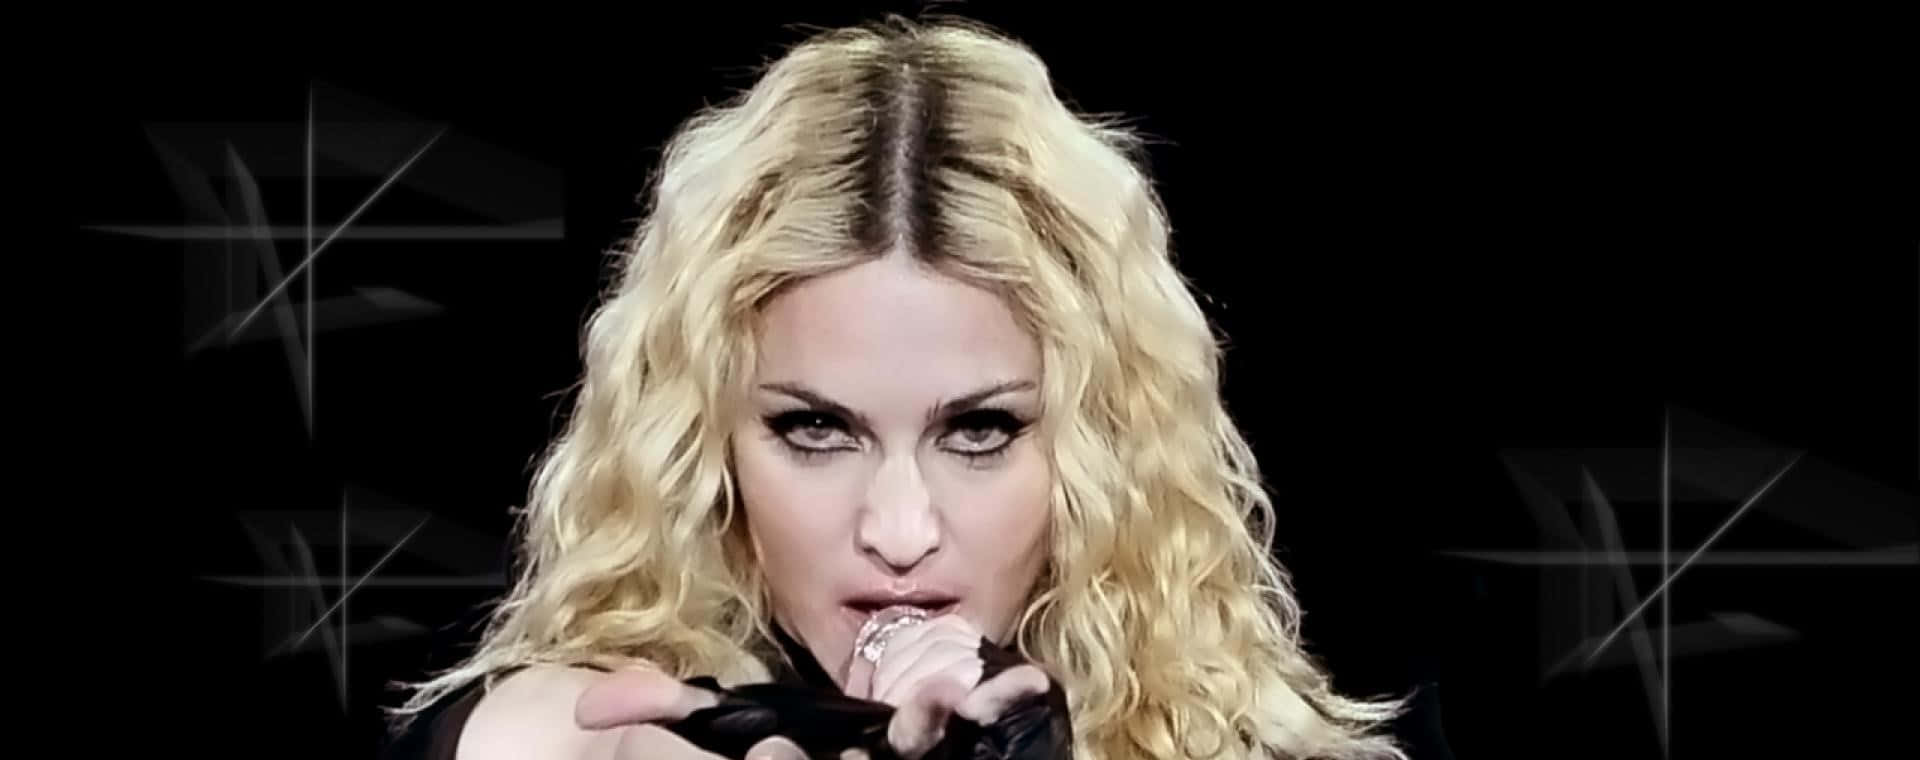 Madonnabakgrundsbilder - Hd